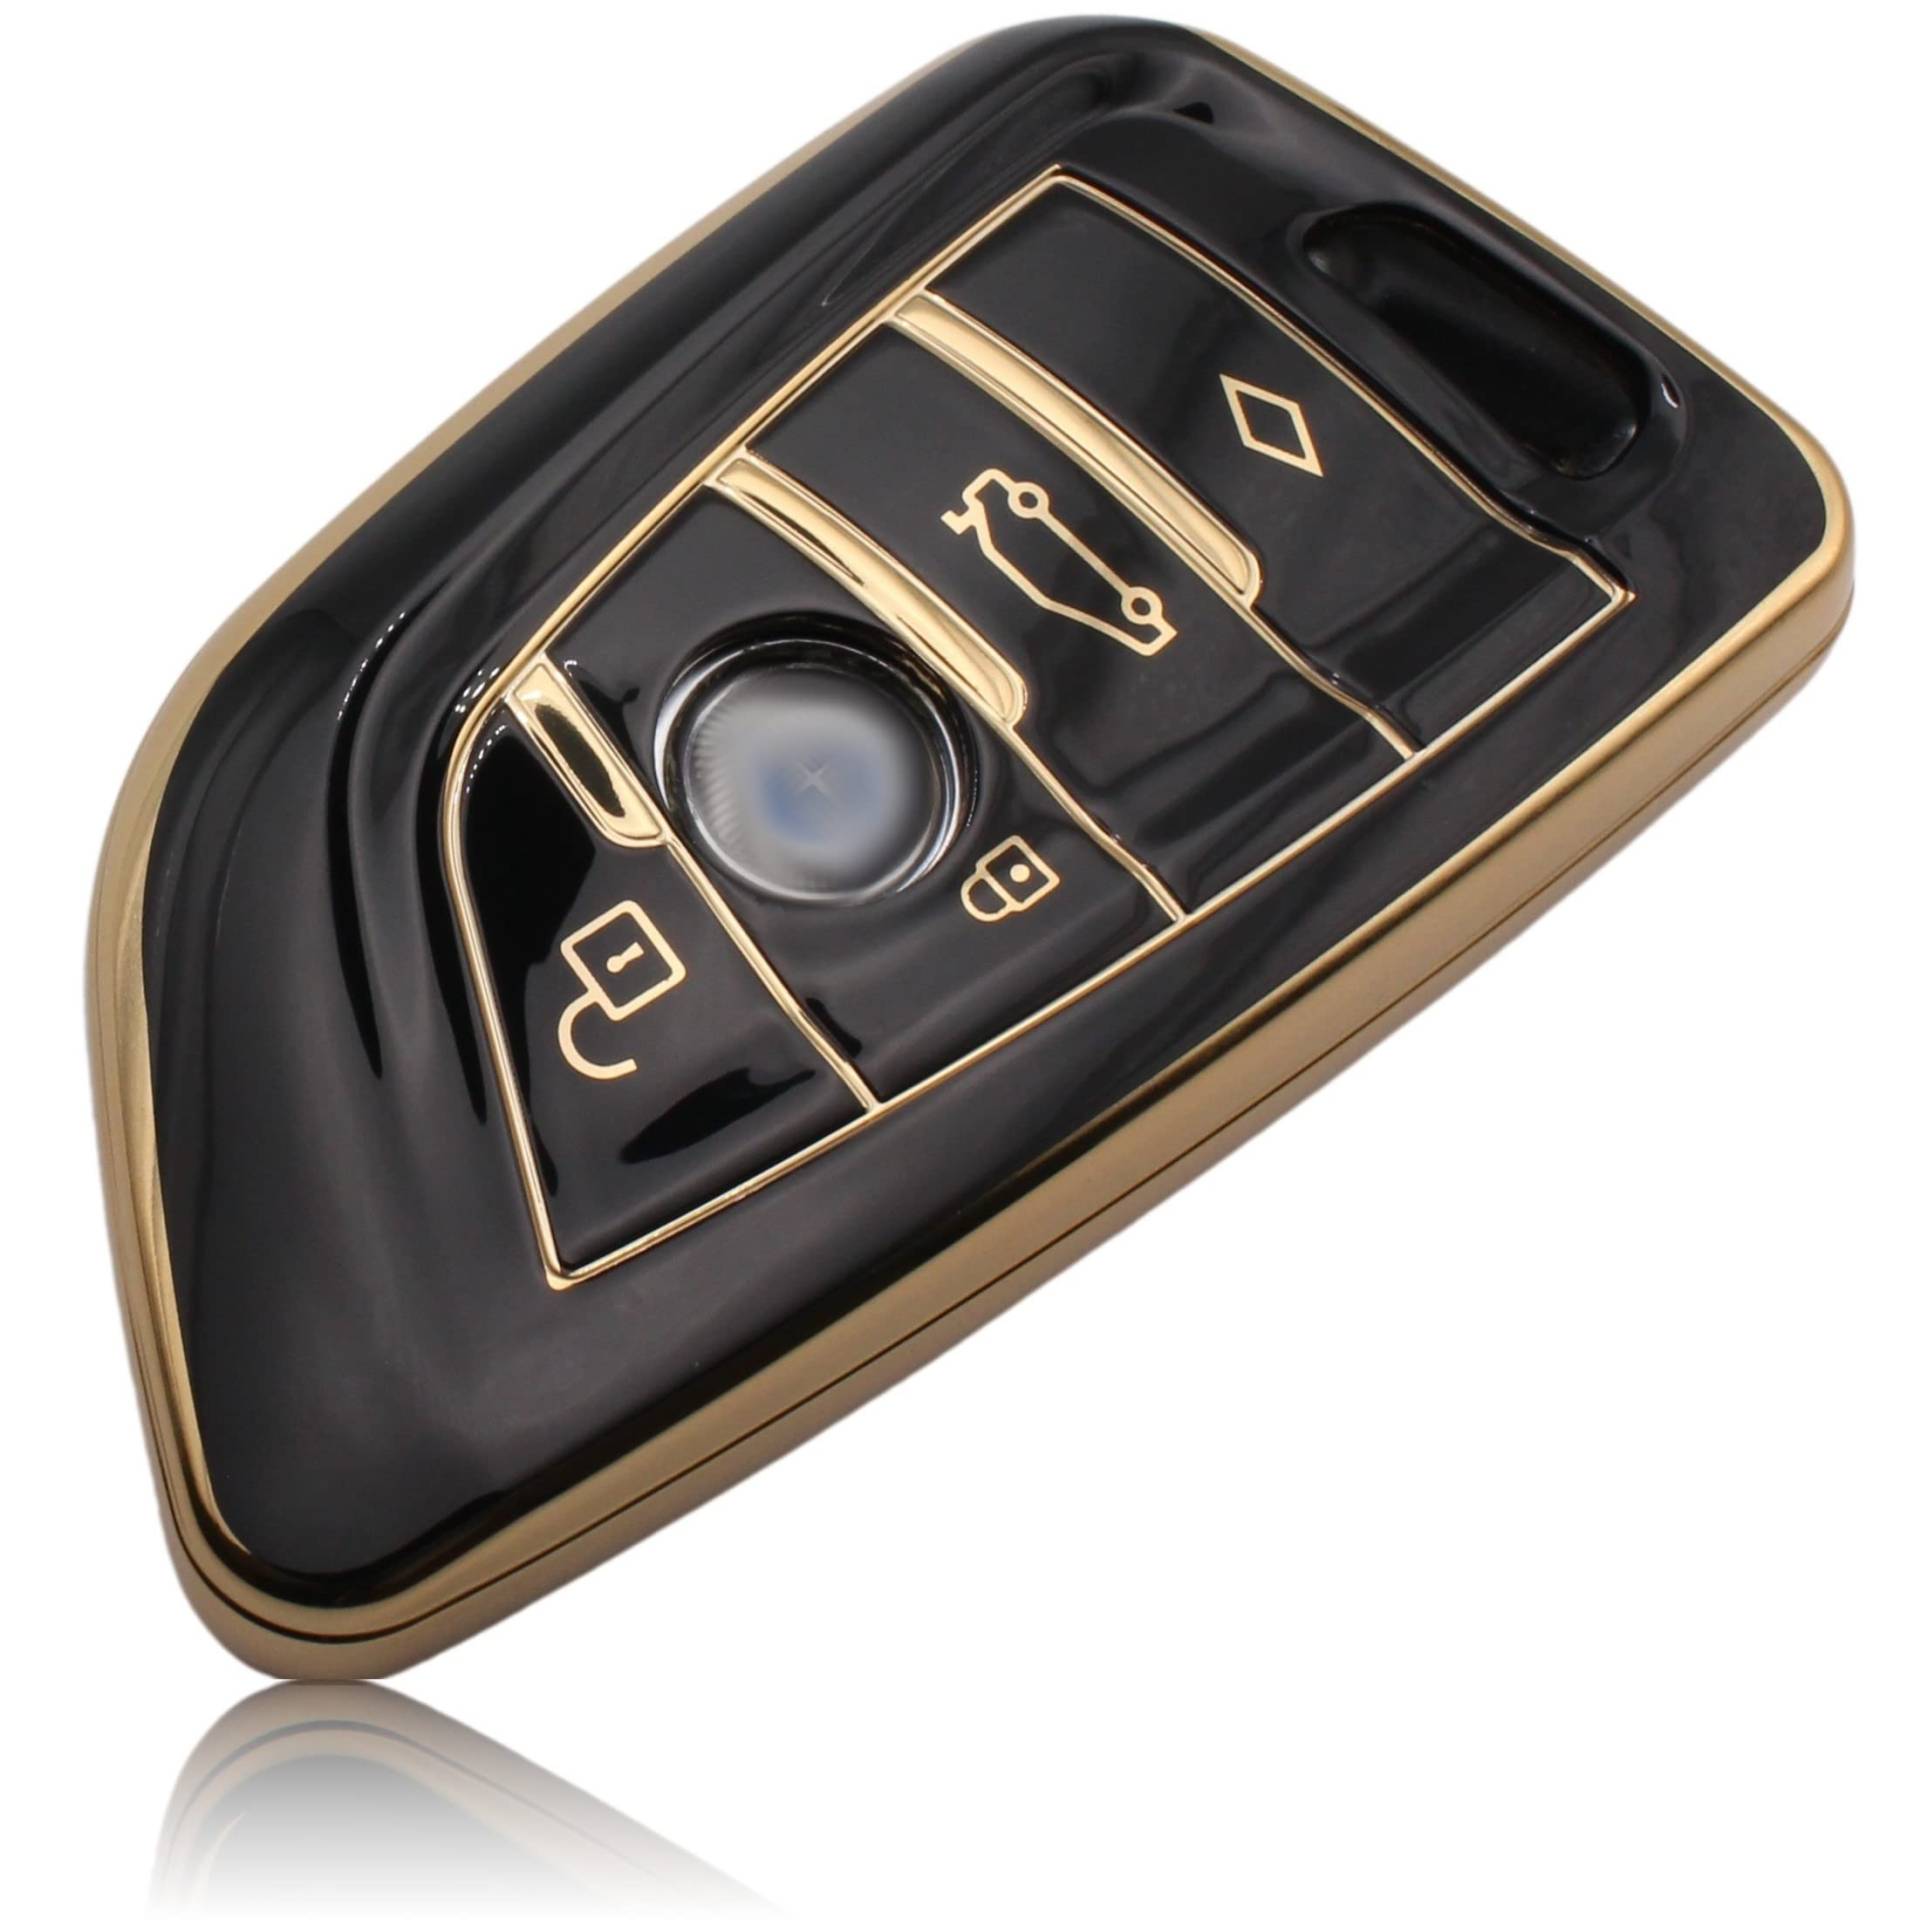 FOAMO Autoschlüssel Hülle kompatibel mit BMW 3-4-Tasten (nur Keyless-Go) - TPU Schutzhülle Cover Schlüssel-Hülle in Schwarz-Gold von FOAMO